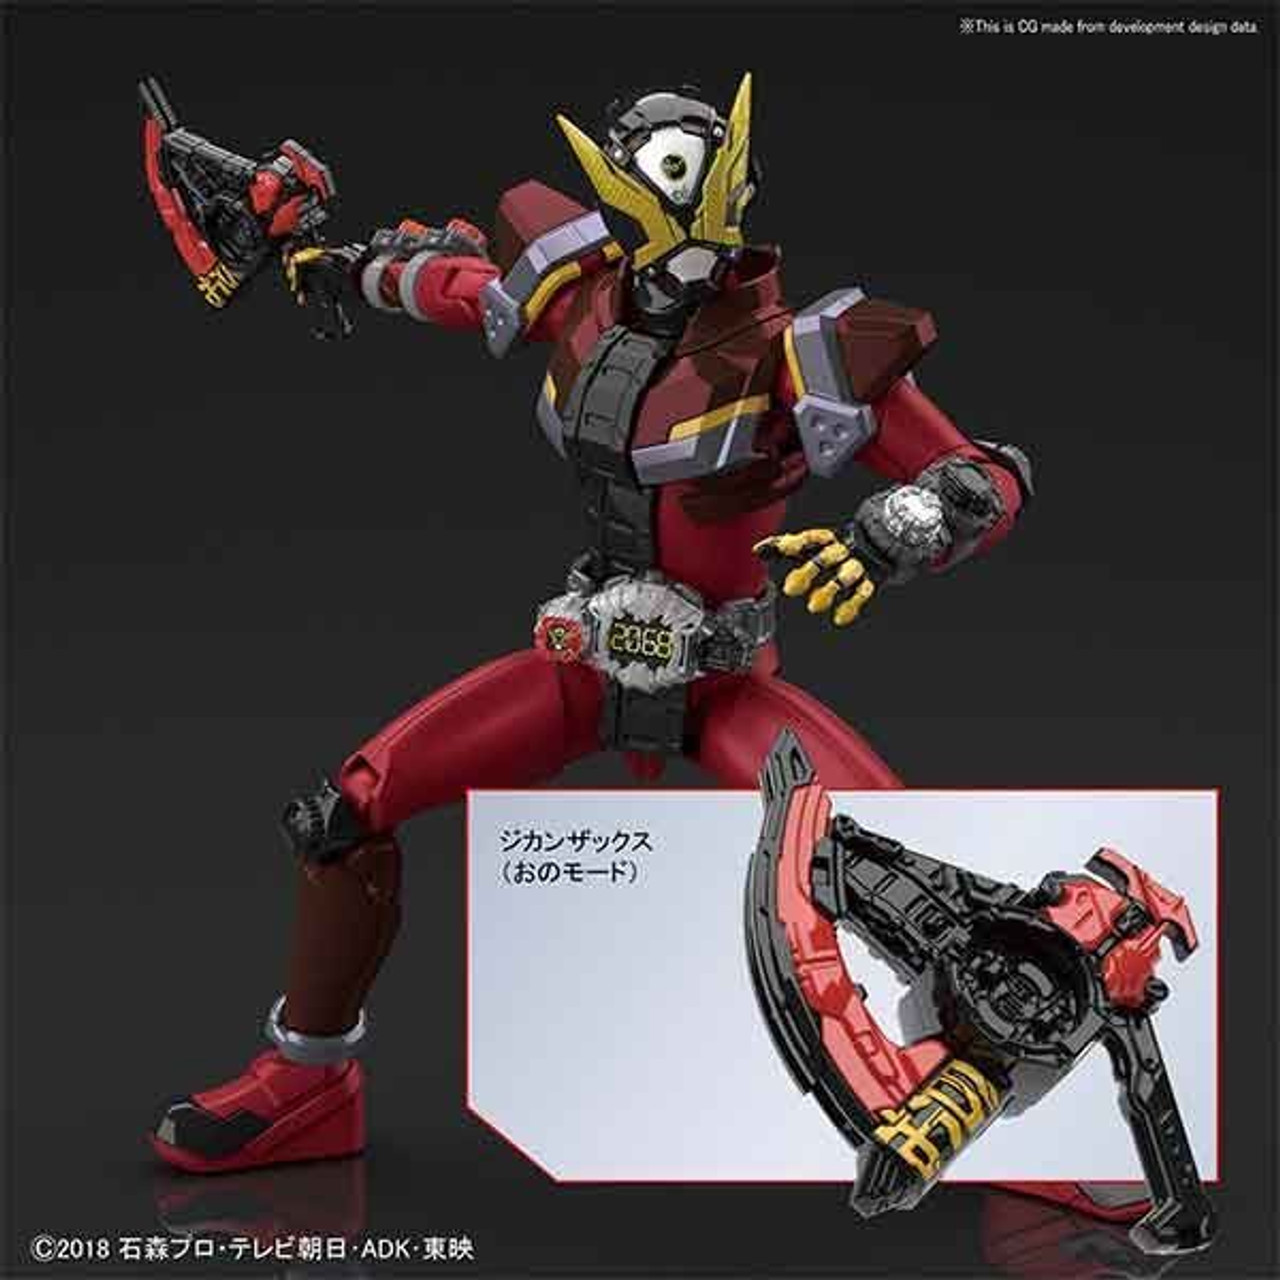 5057068 Kamen Rider Geiz "Kamen Rider", Bandai Figure-rise Standard